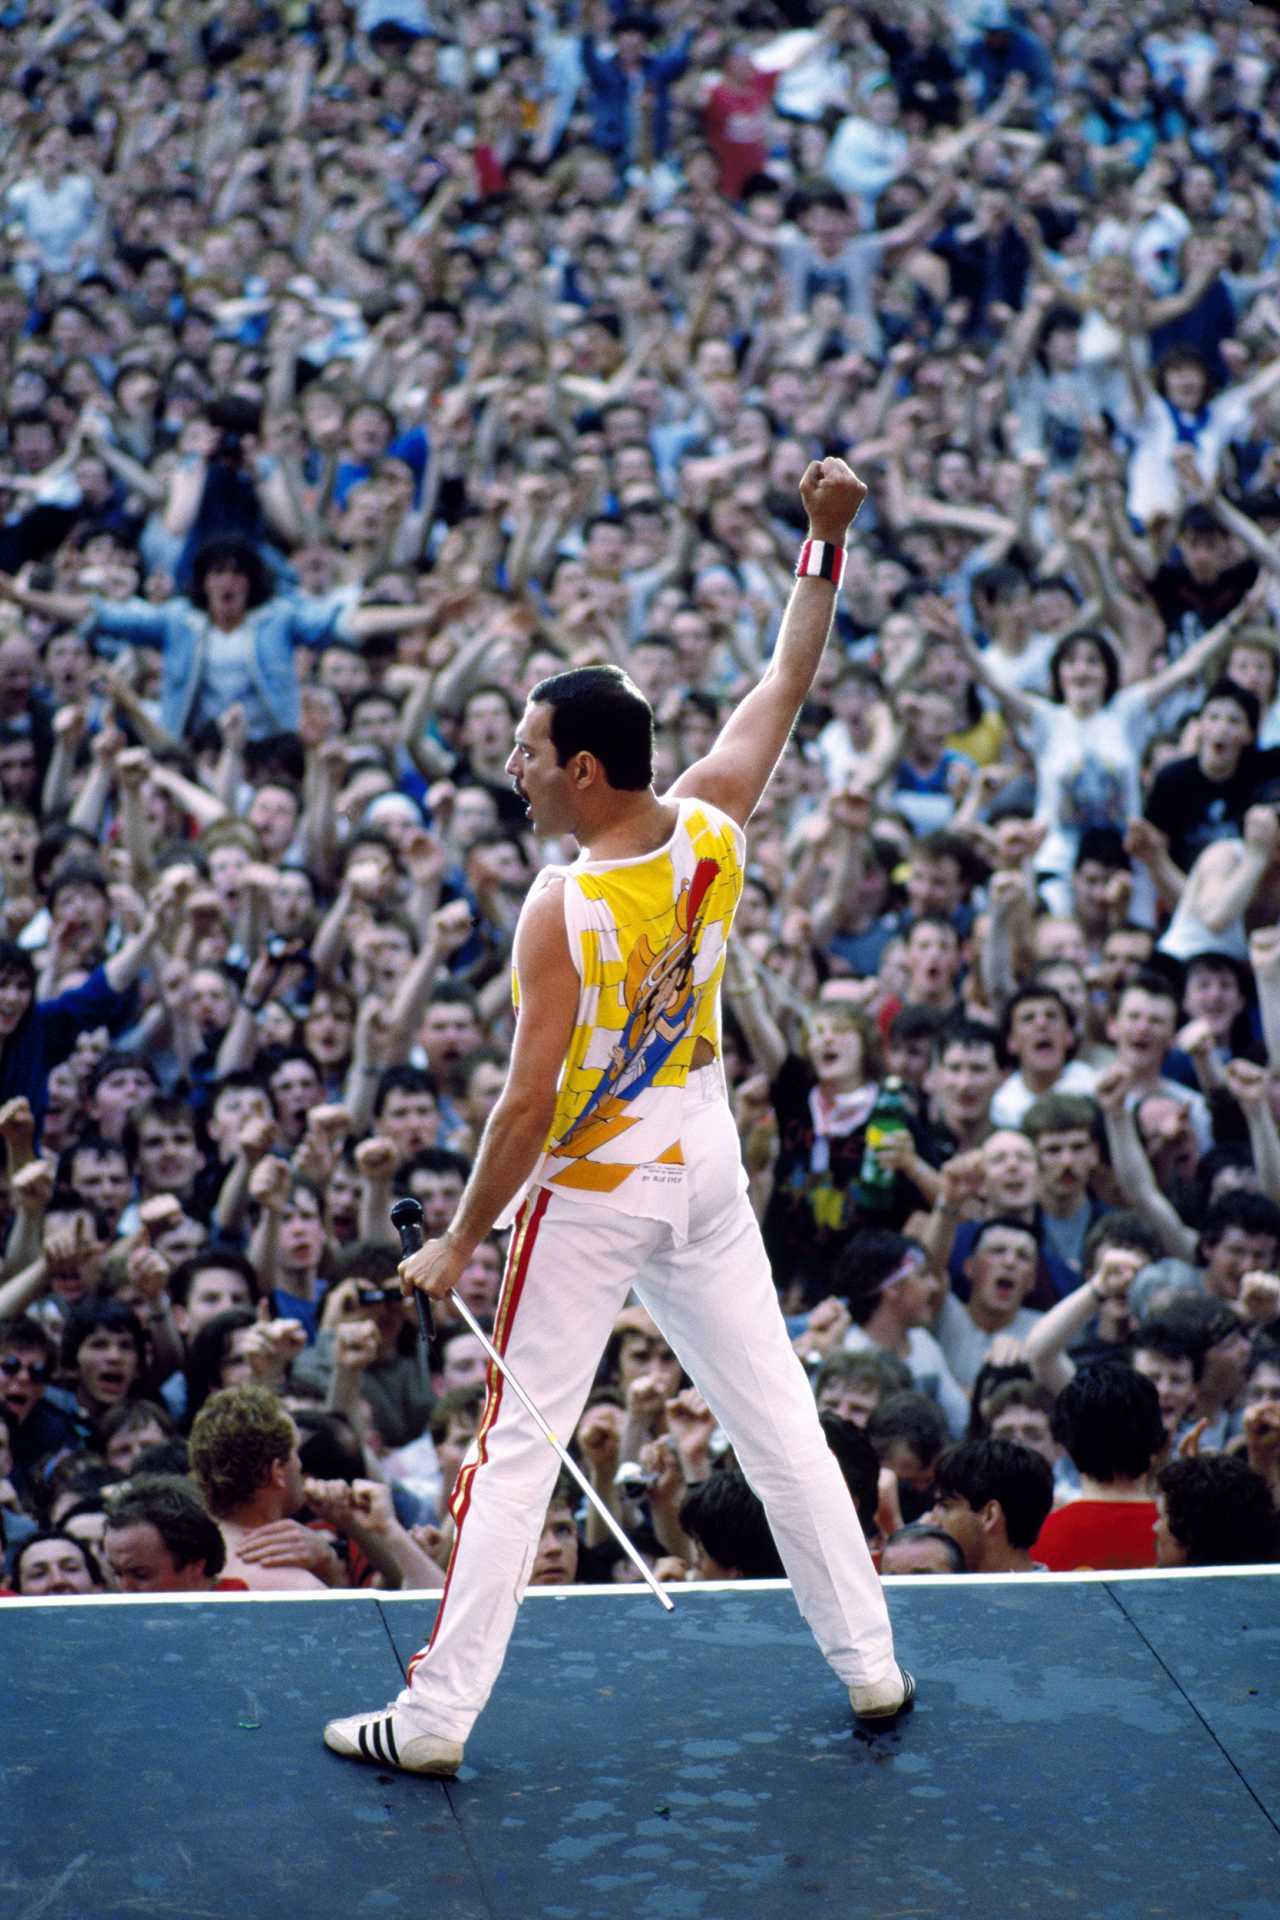 Freddie Mercury flexing